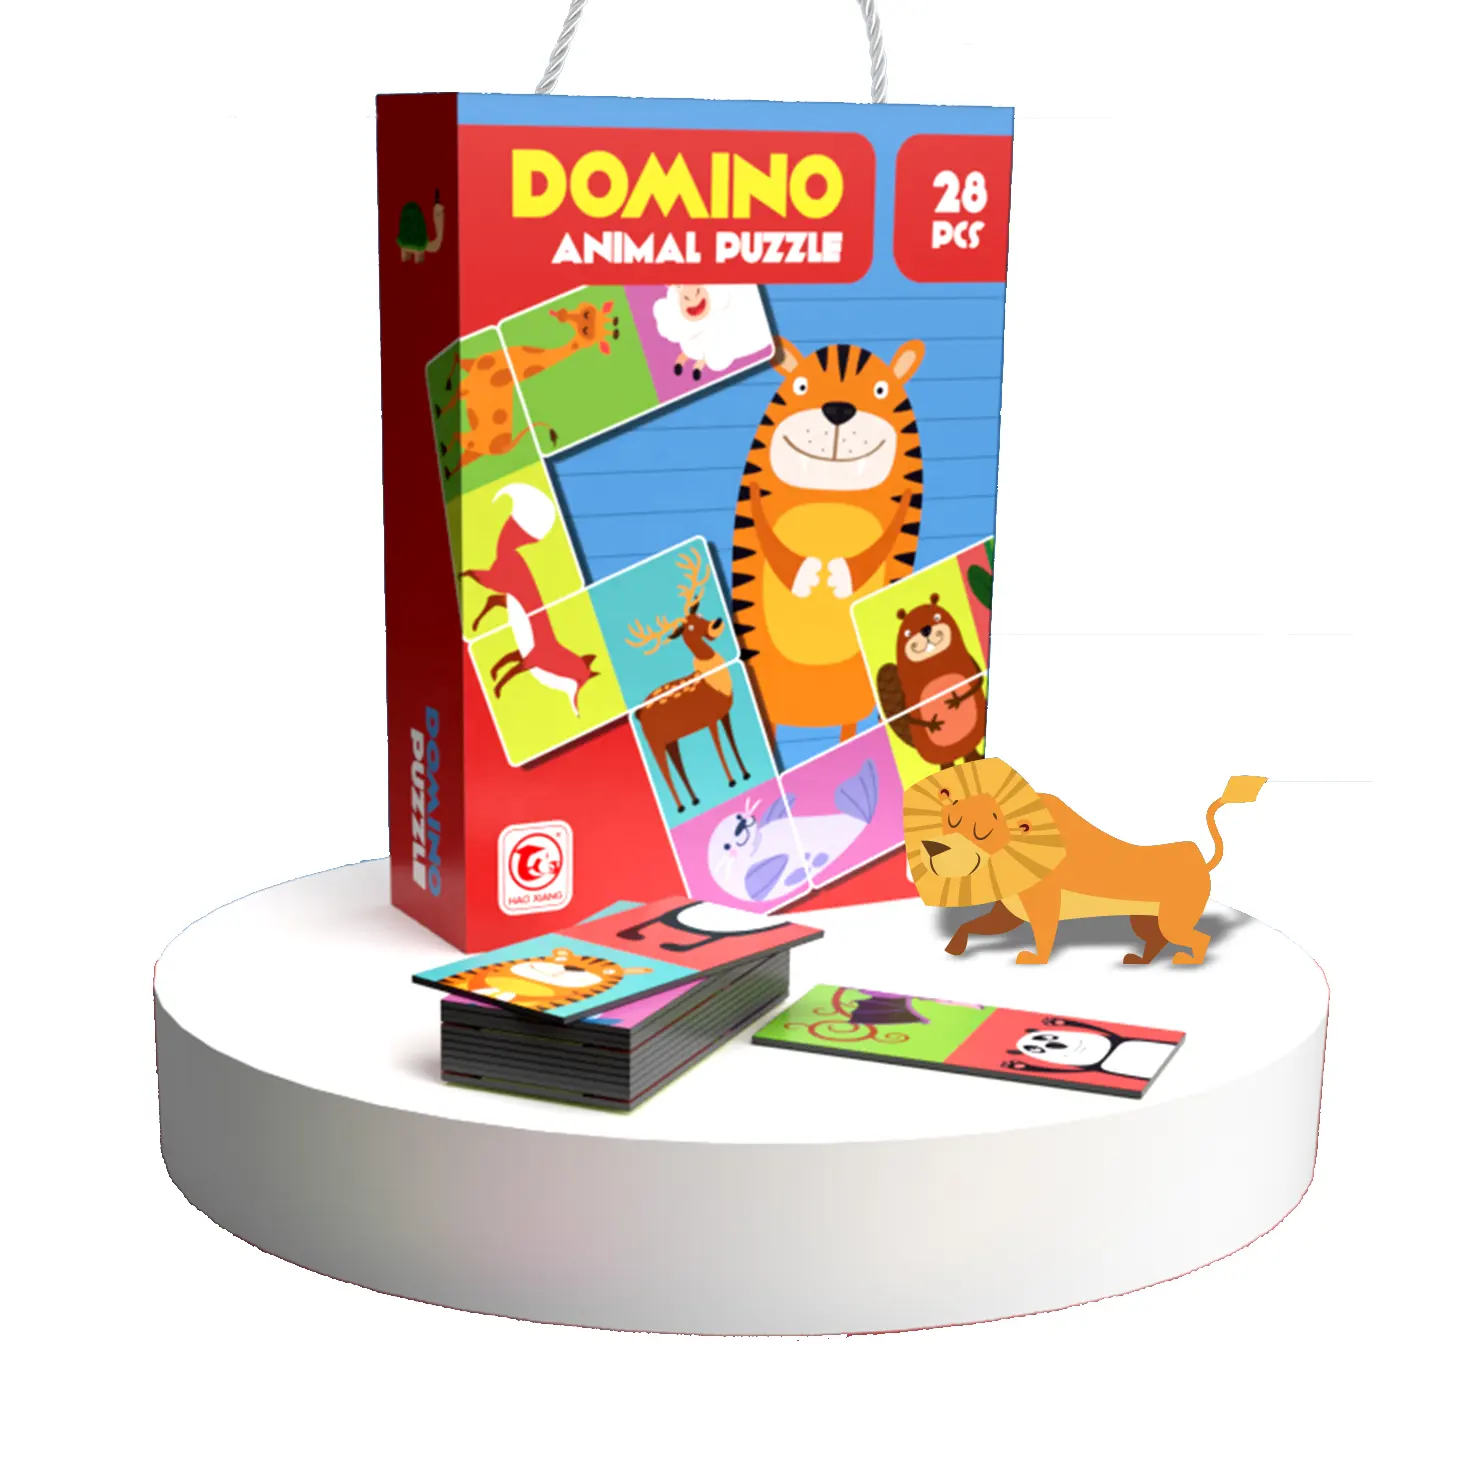 28 Stuks Hot Selling Educatief Speelgoed Domino Serie Puzzel Image Games Kinderen Assembleren Legpuzzels Speelgoed